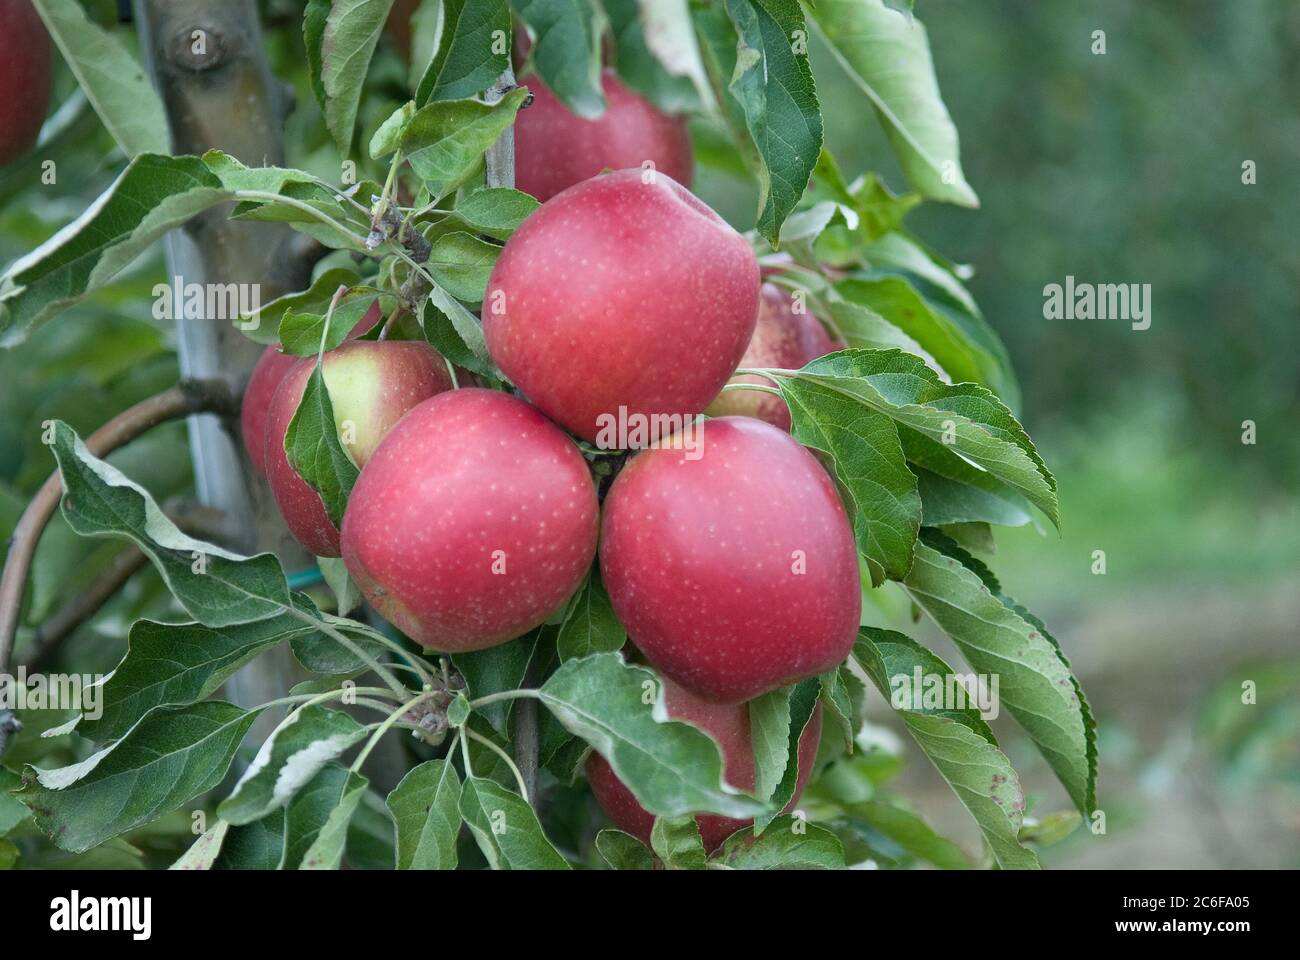 Winter-Apfel, Malus domestica Pivita, Winter apple, Malus domestica Pivita  Stock Photo - Alamy